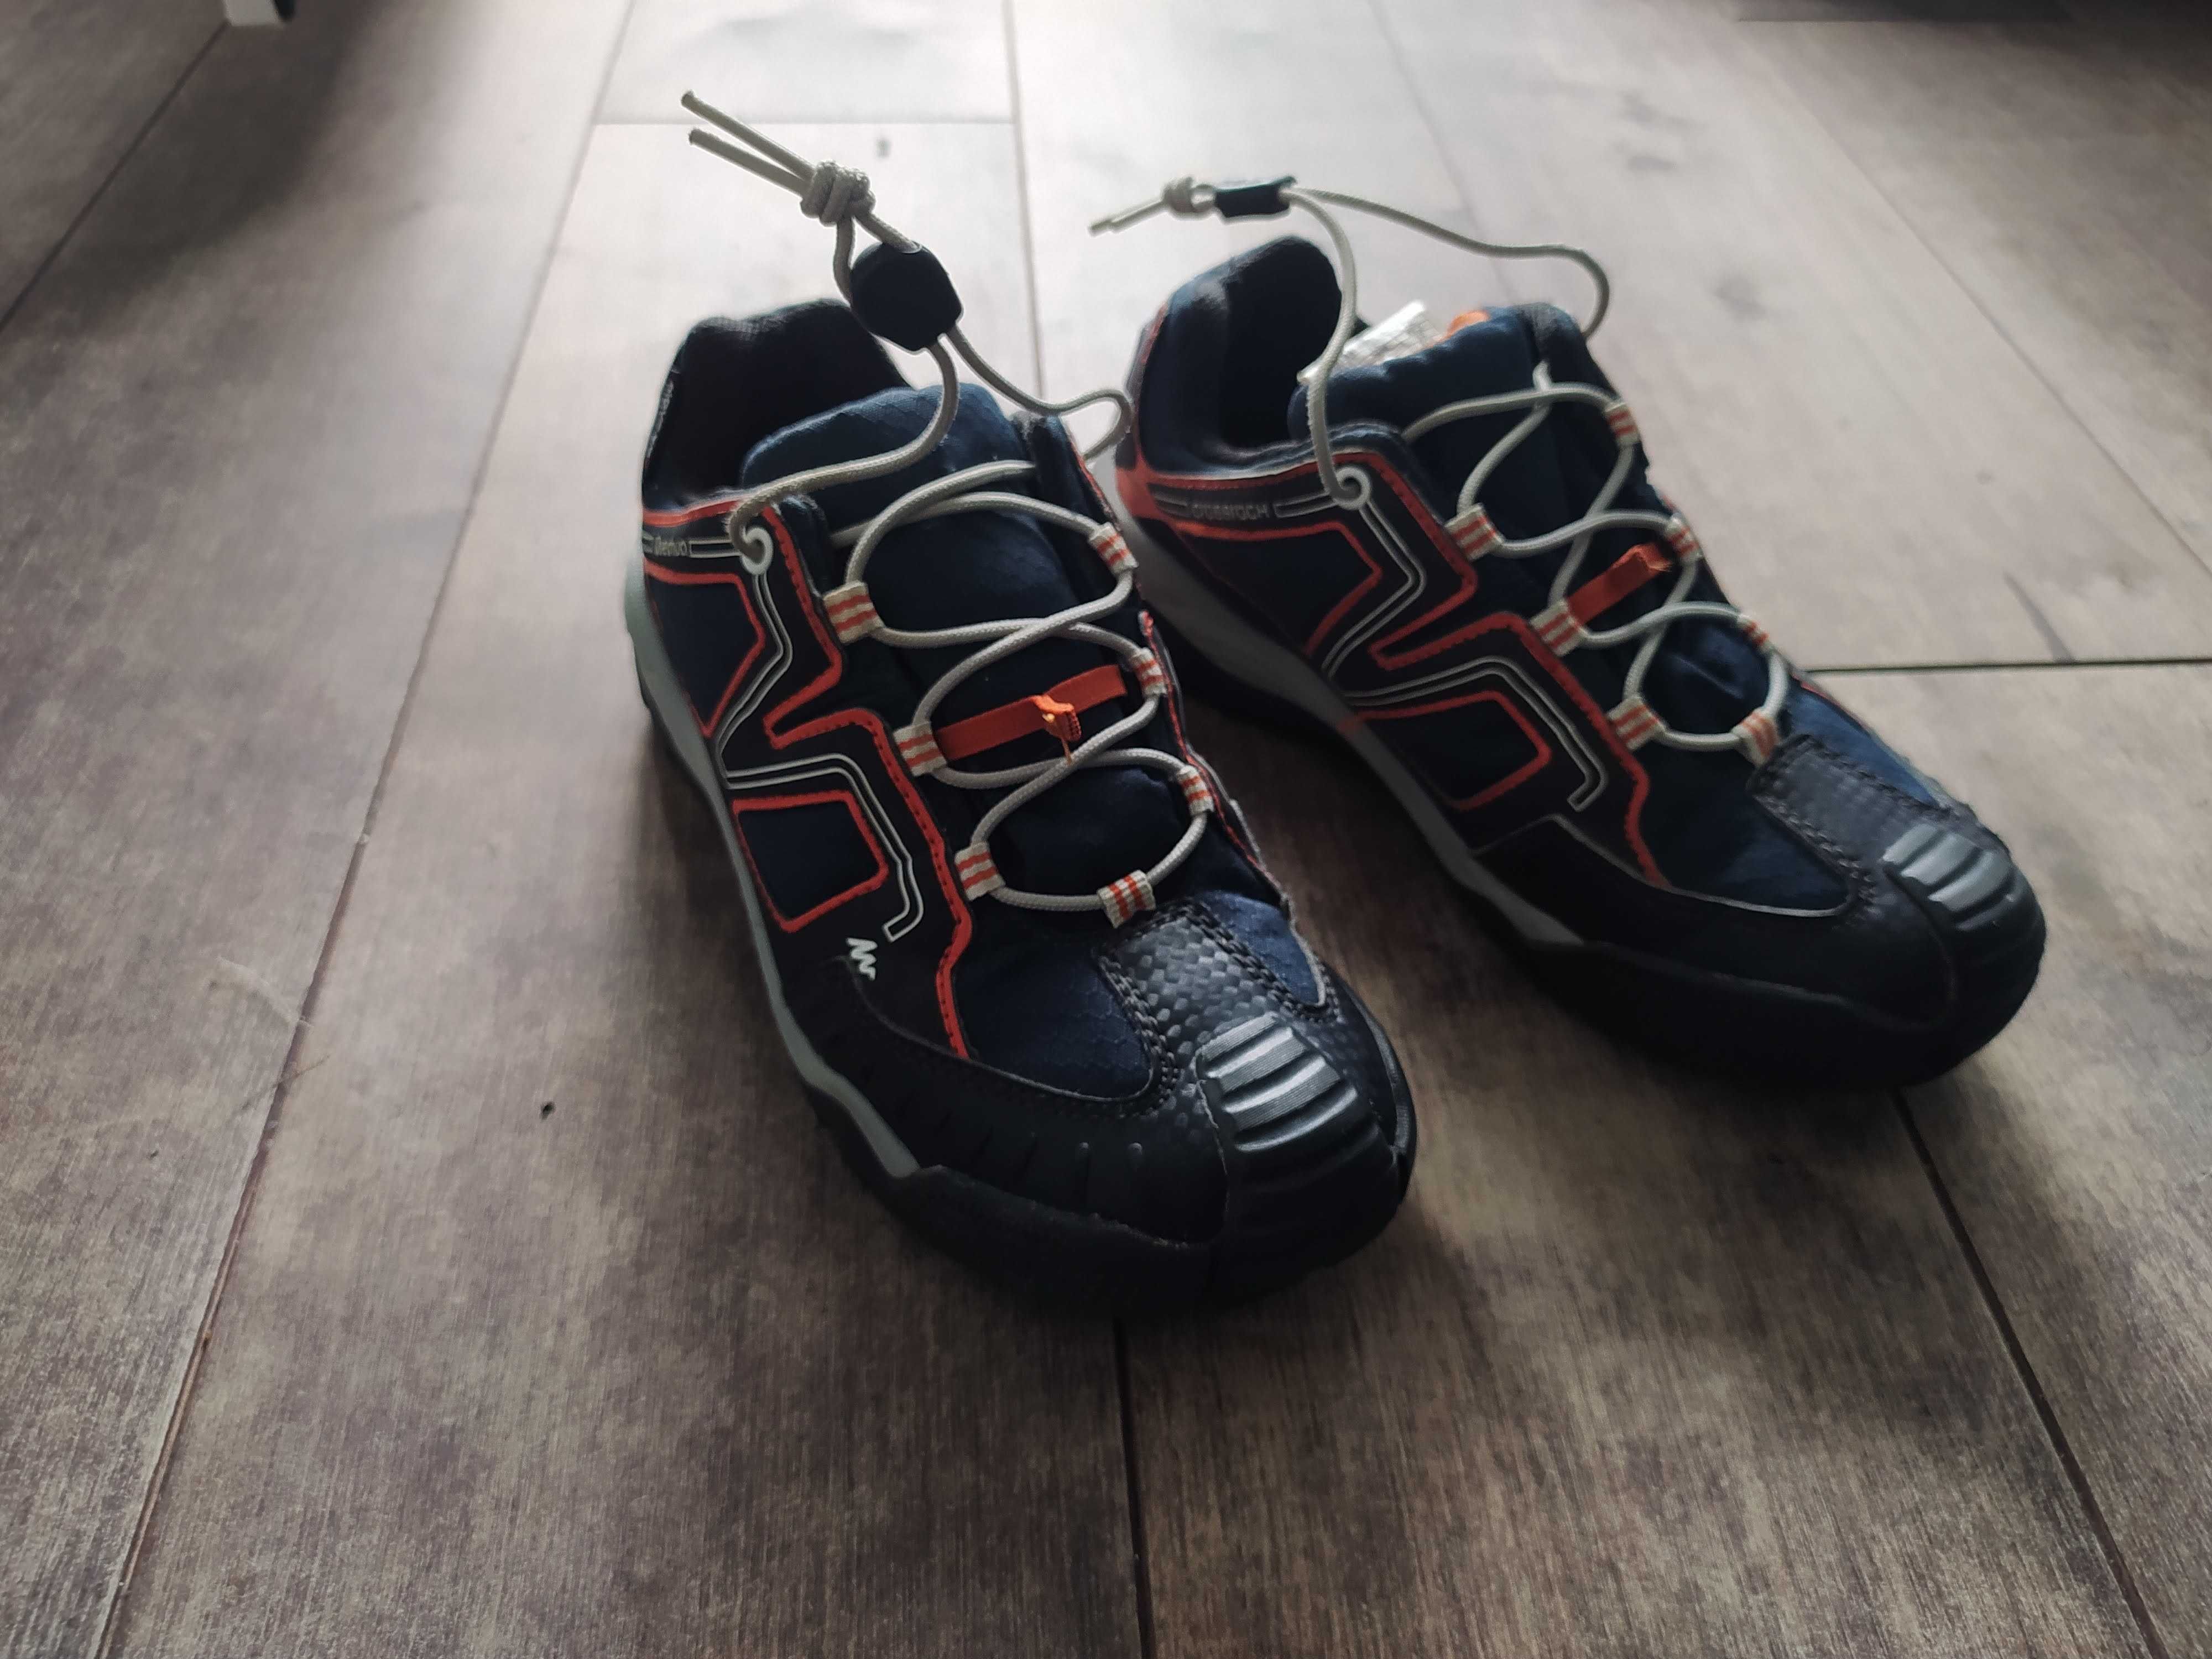 Міцні кросівки посилений носочок кроссовки quechua 33p. 21 см